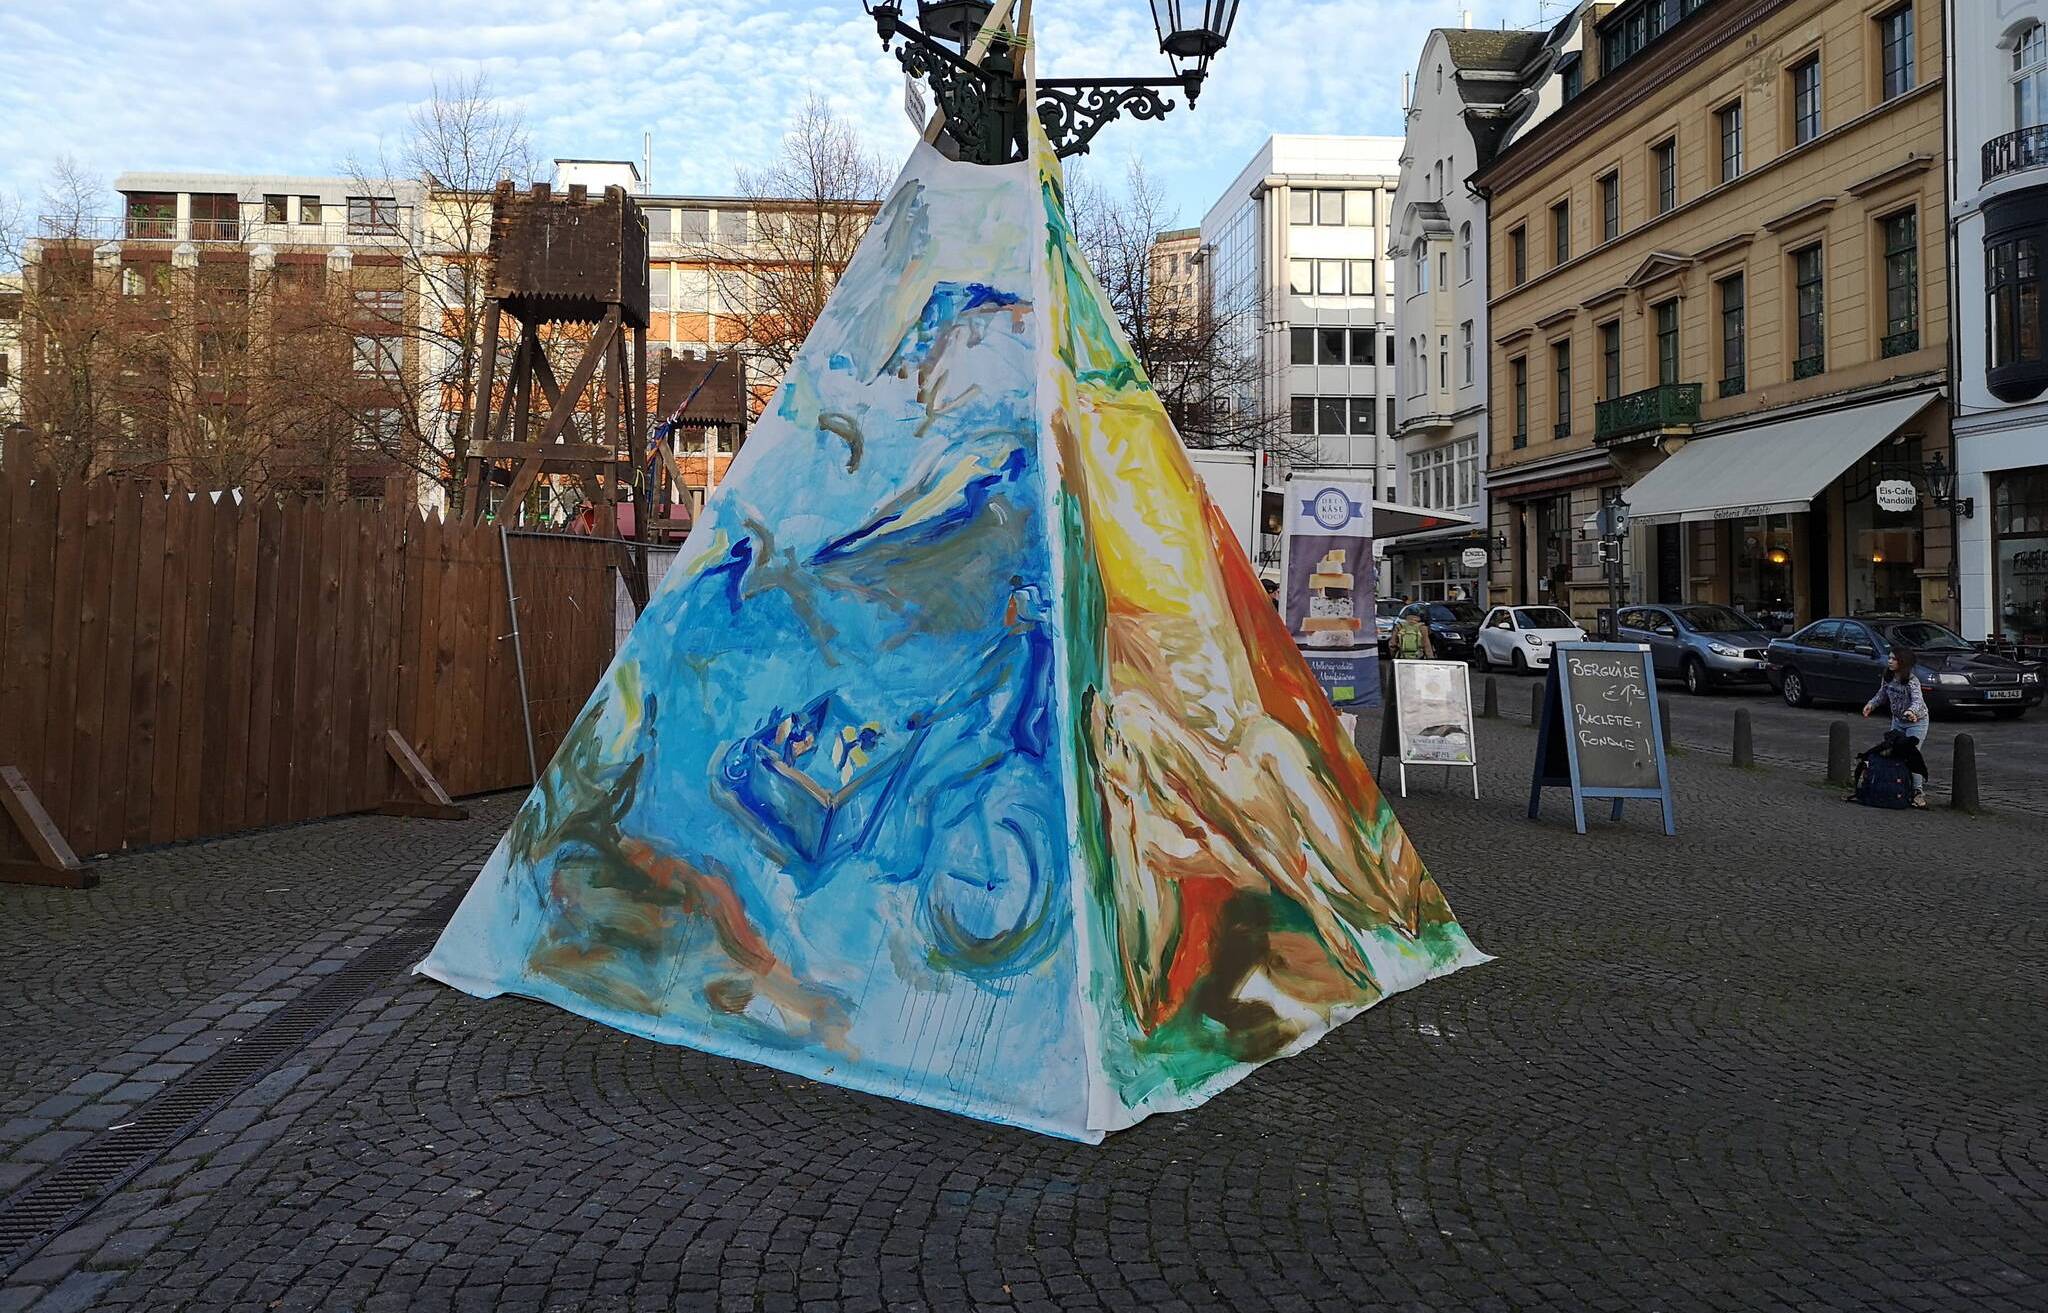  So sieht sie aus, die Künstler-Krippe 2020 auf dem Laurentiusplatz. In diesem Jahr wurde sie nicht, wie üblich, von Graffiti-Künstler Martin Heuwold gestaltet, sondern von der Künstlerin Annette Marks.  